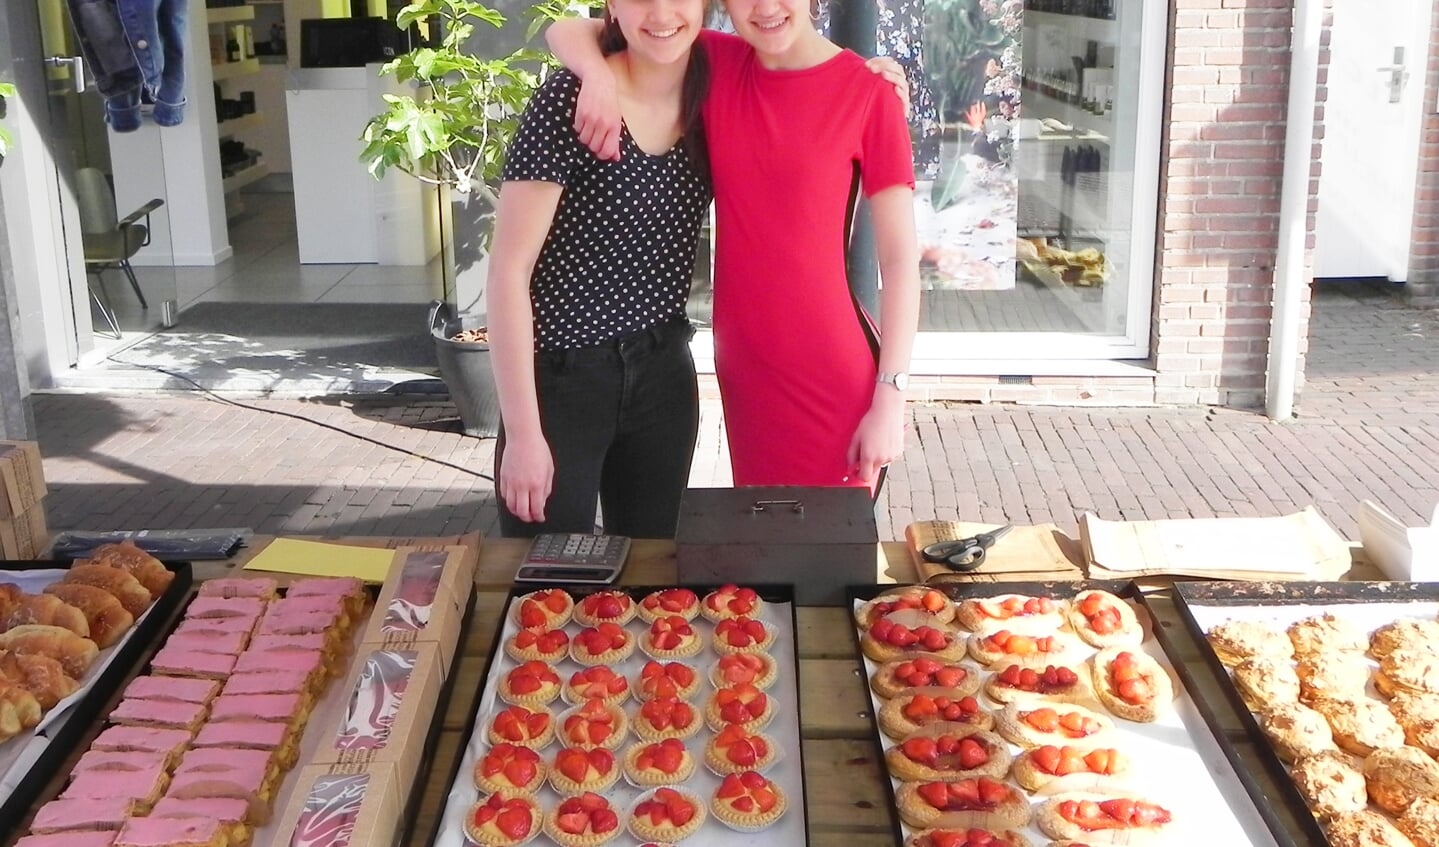 Ilise en Eline presenteerden lekkernijen van bakkerij van Dijk.